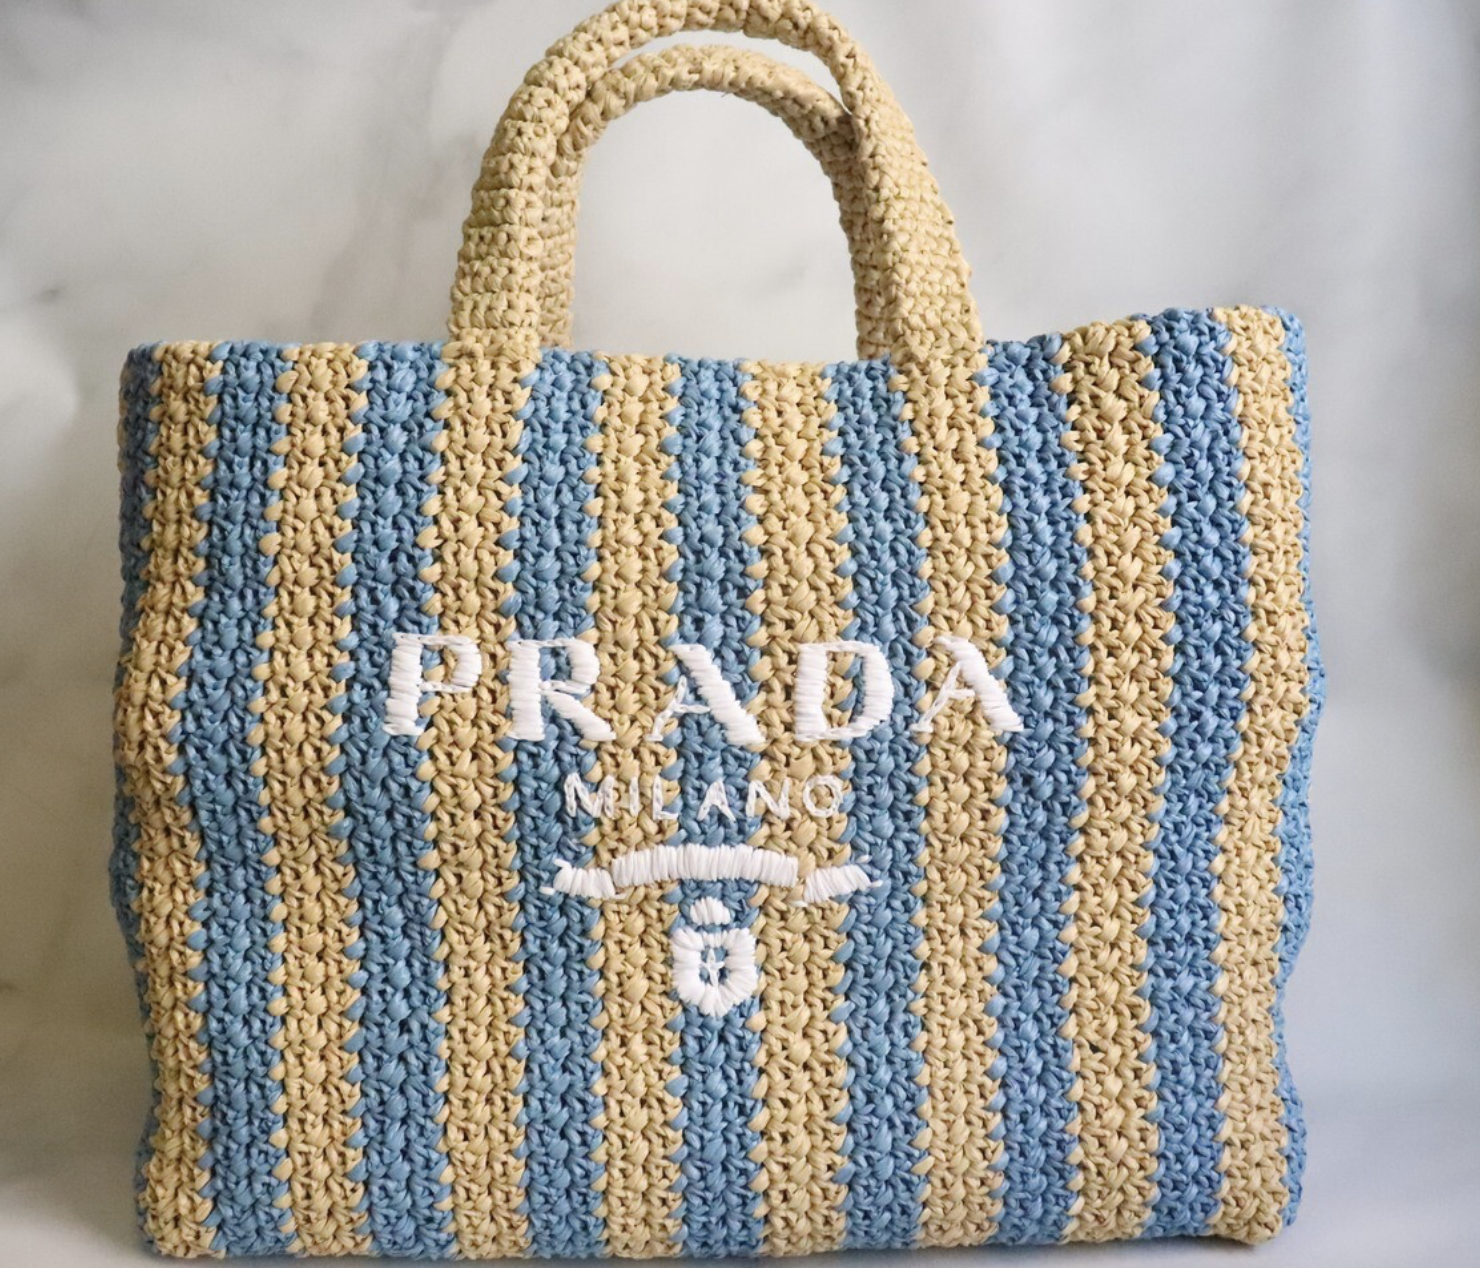 Prada Raffia Tote Bag, Blue Strap, New in Dustbag WA001